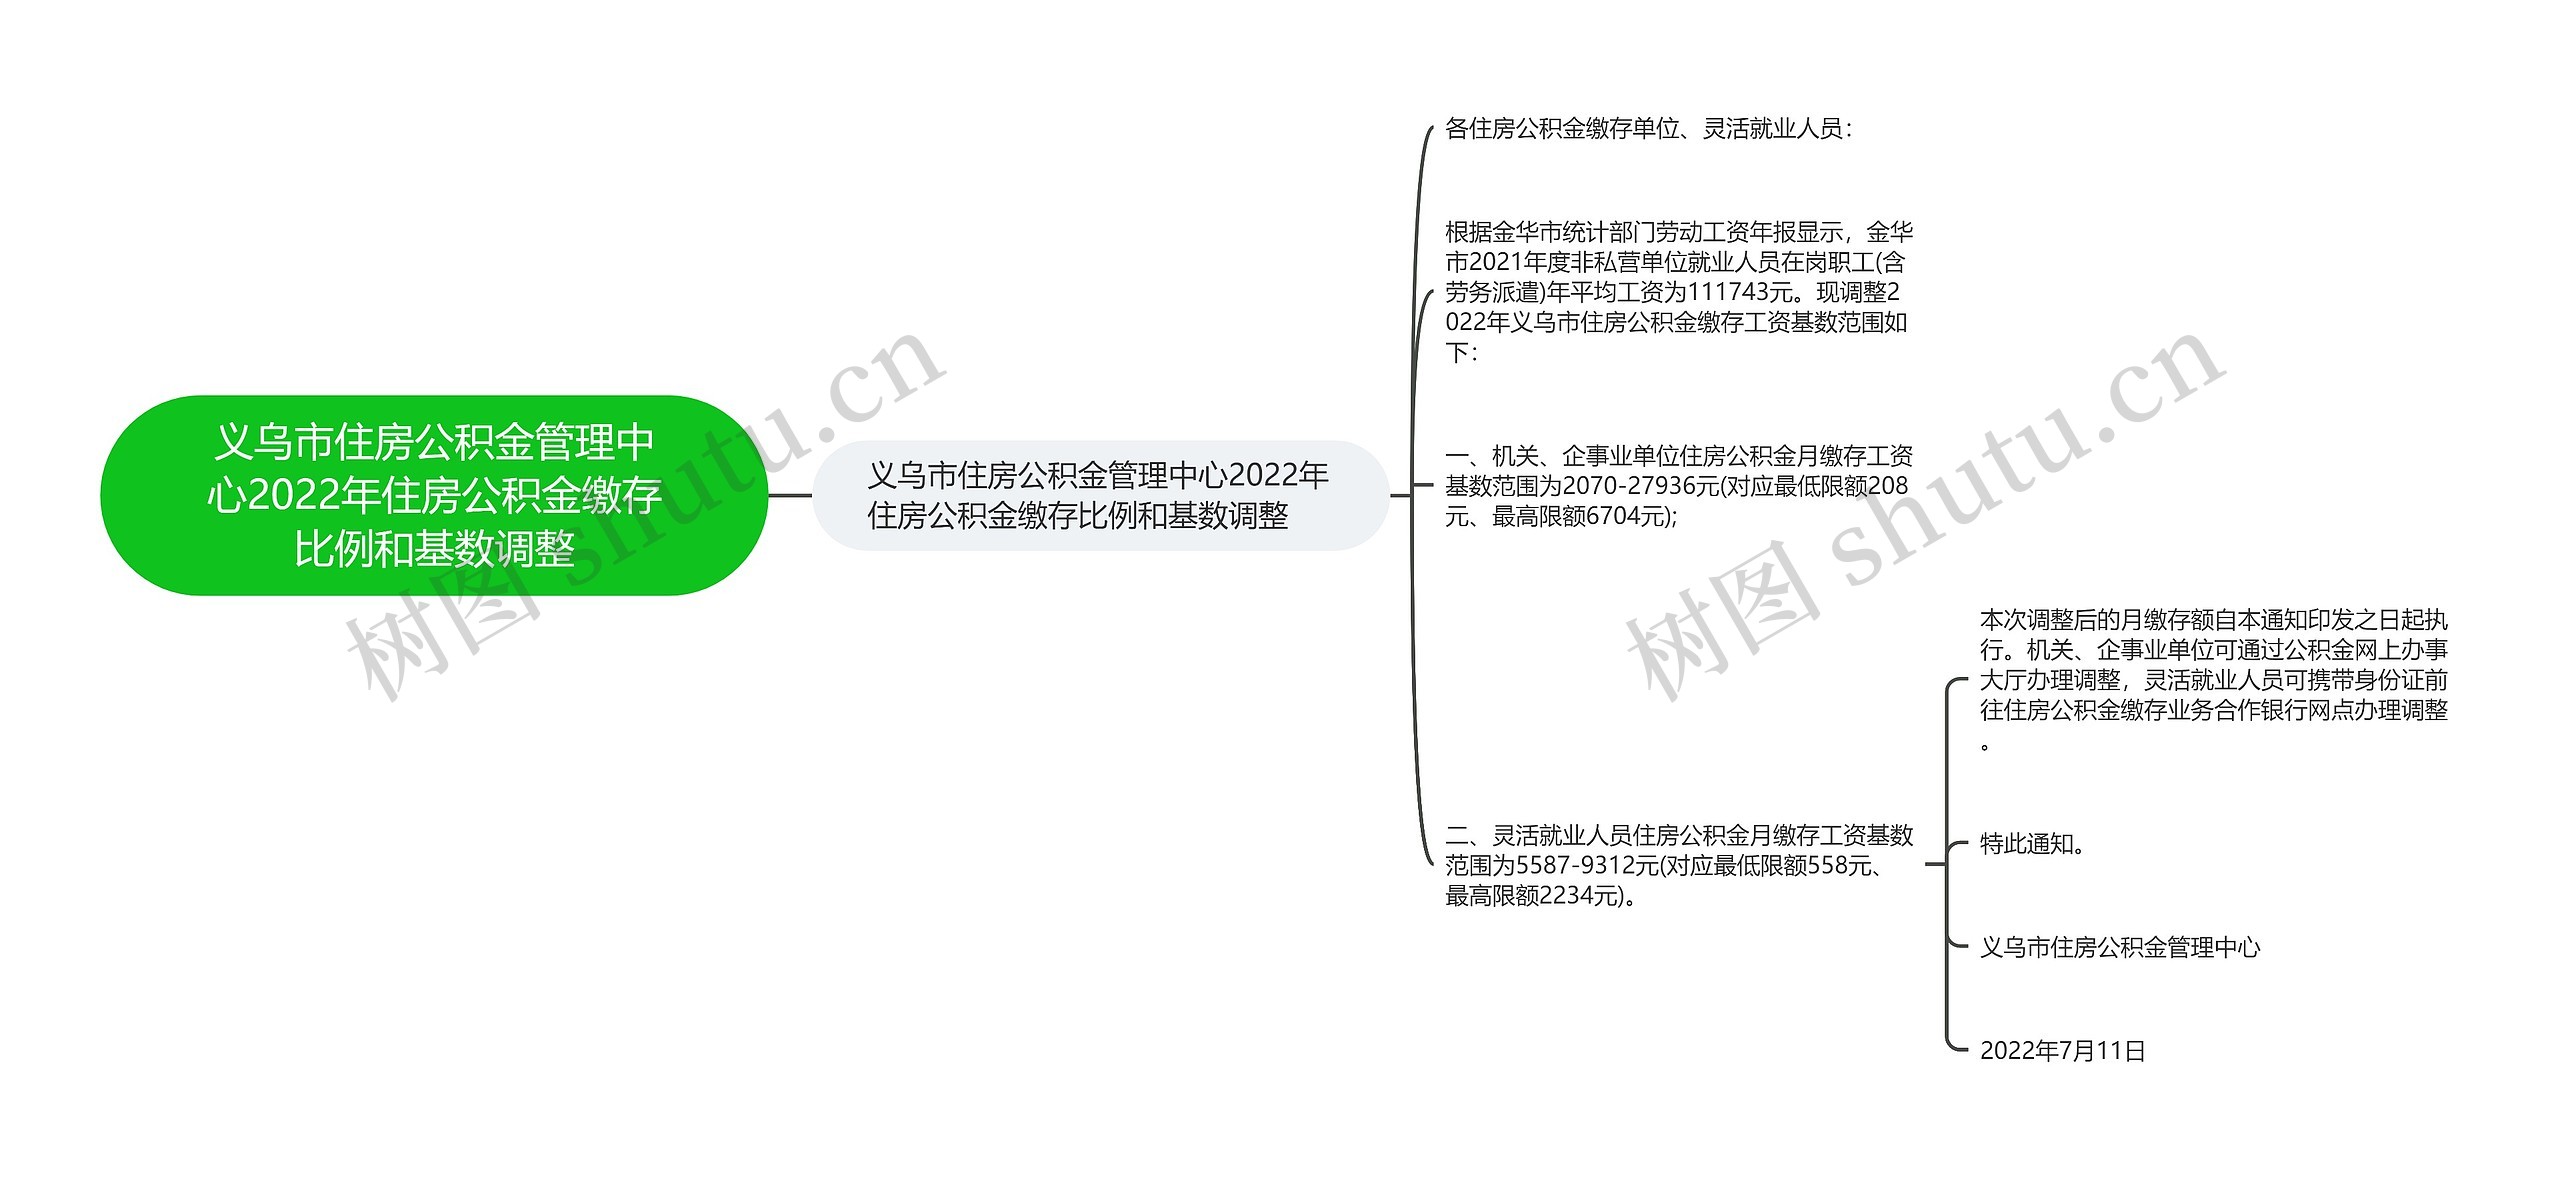 义乌市住房公积金管理中心2022年住房公积金缴存比例和基数调整思维导图